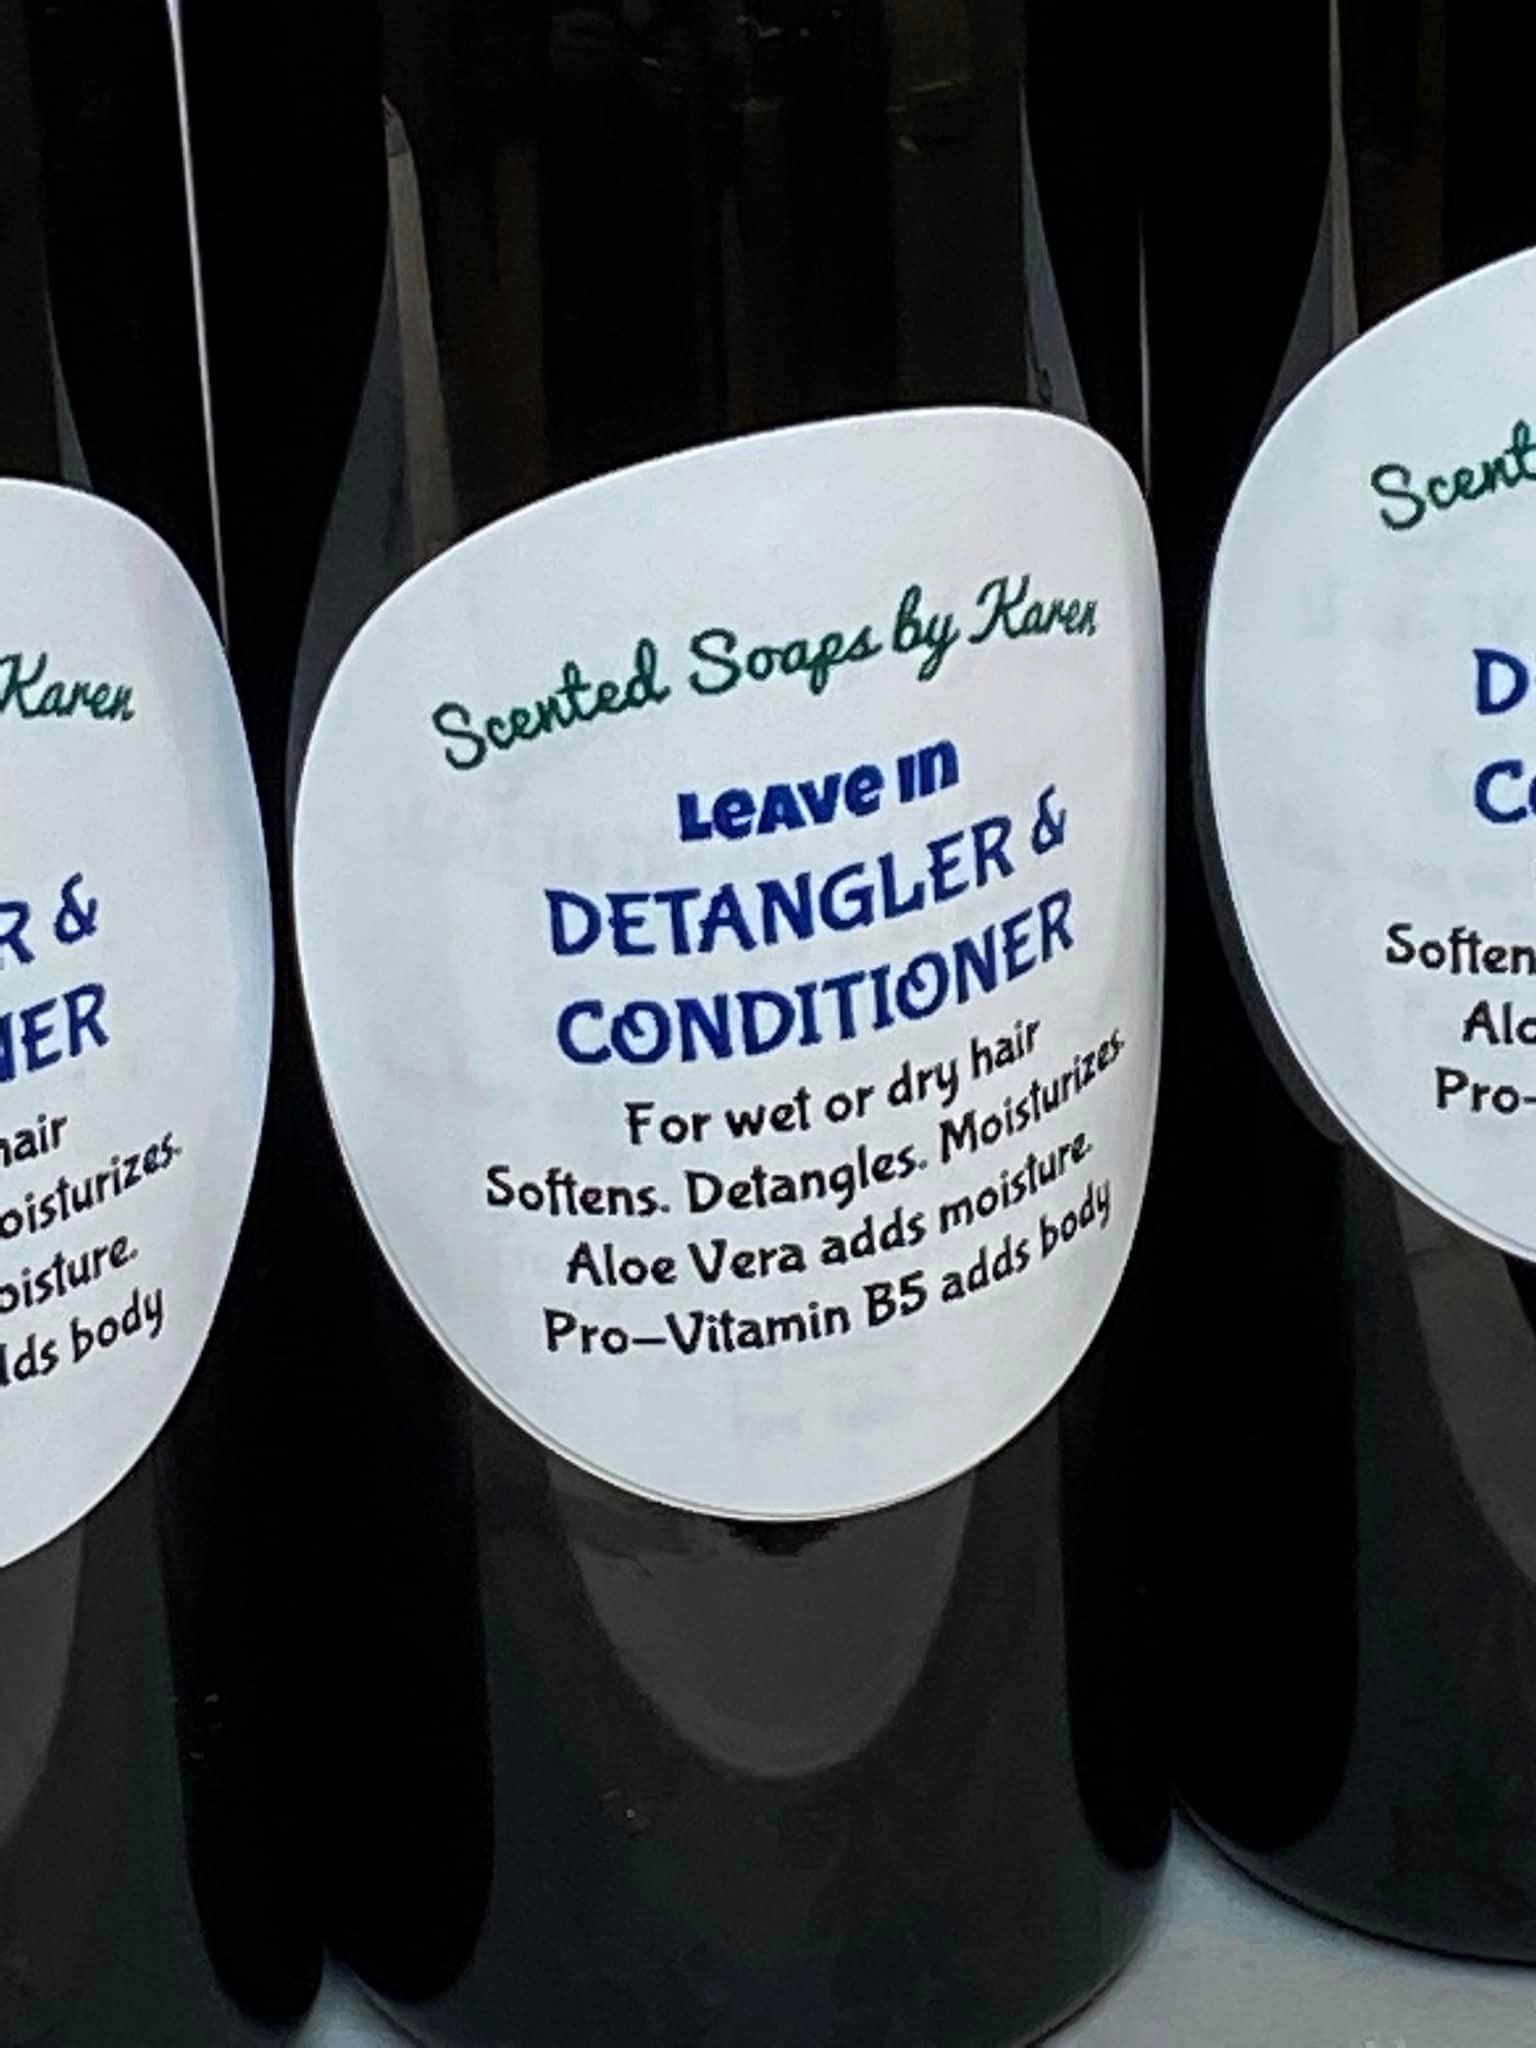 Detangler & Hair Conditioner, LEAVE IN SPRAY. 7 ounces for wet or dry hair. Softens, detangles and moisturizes your hair.